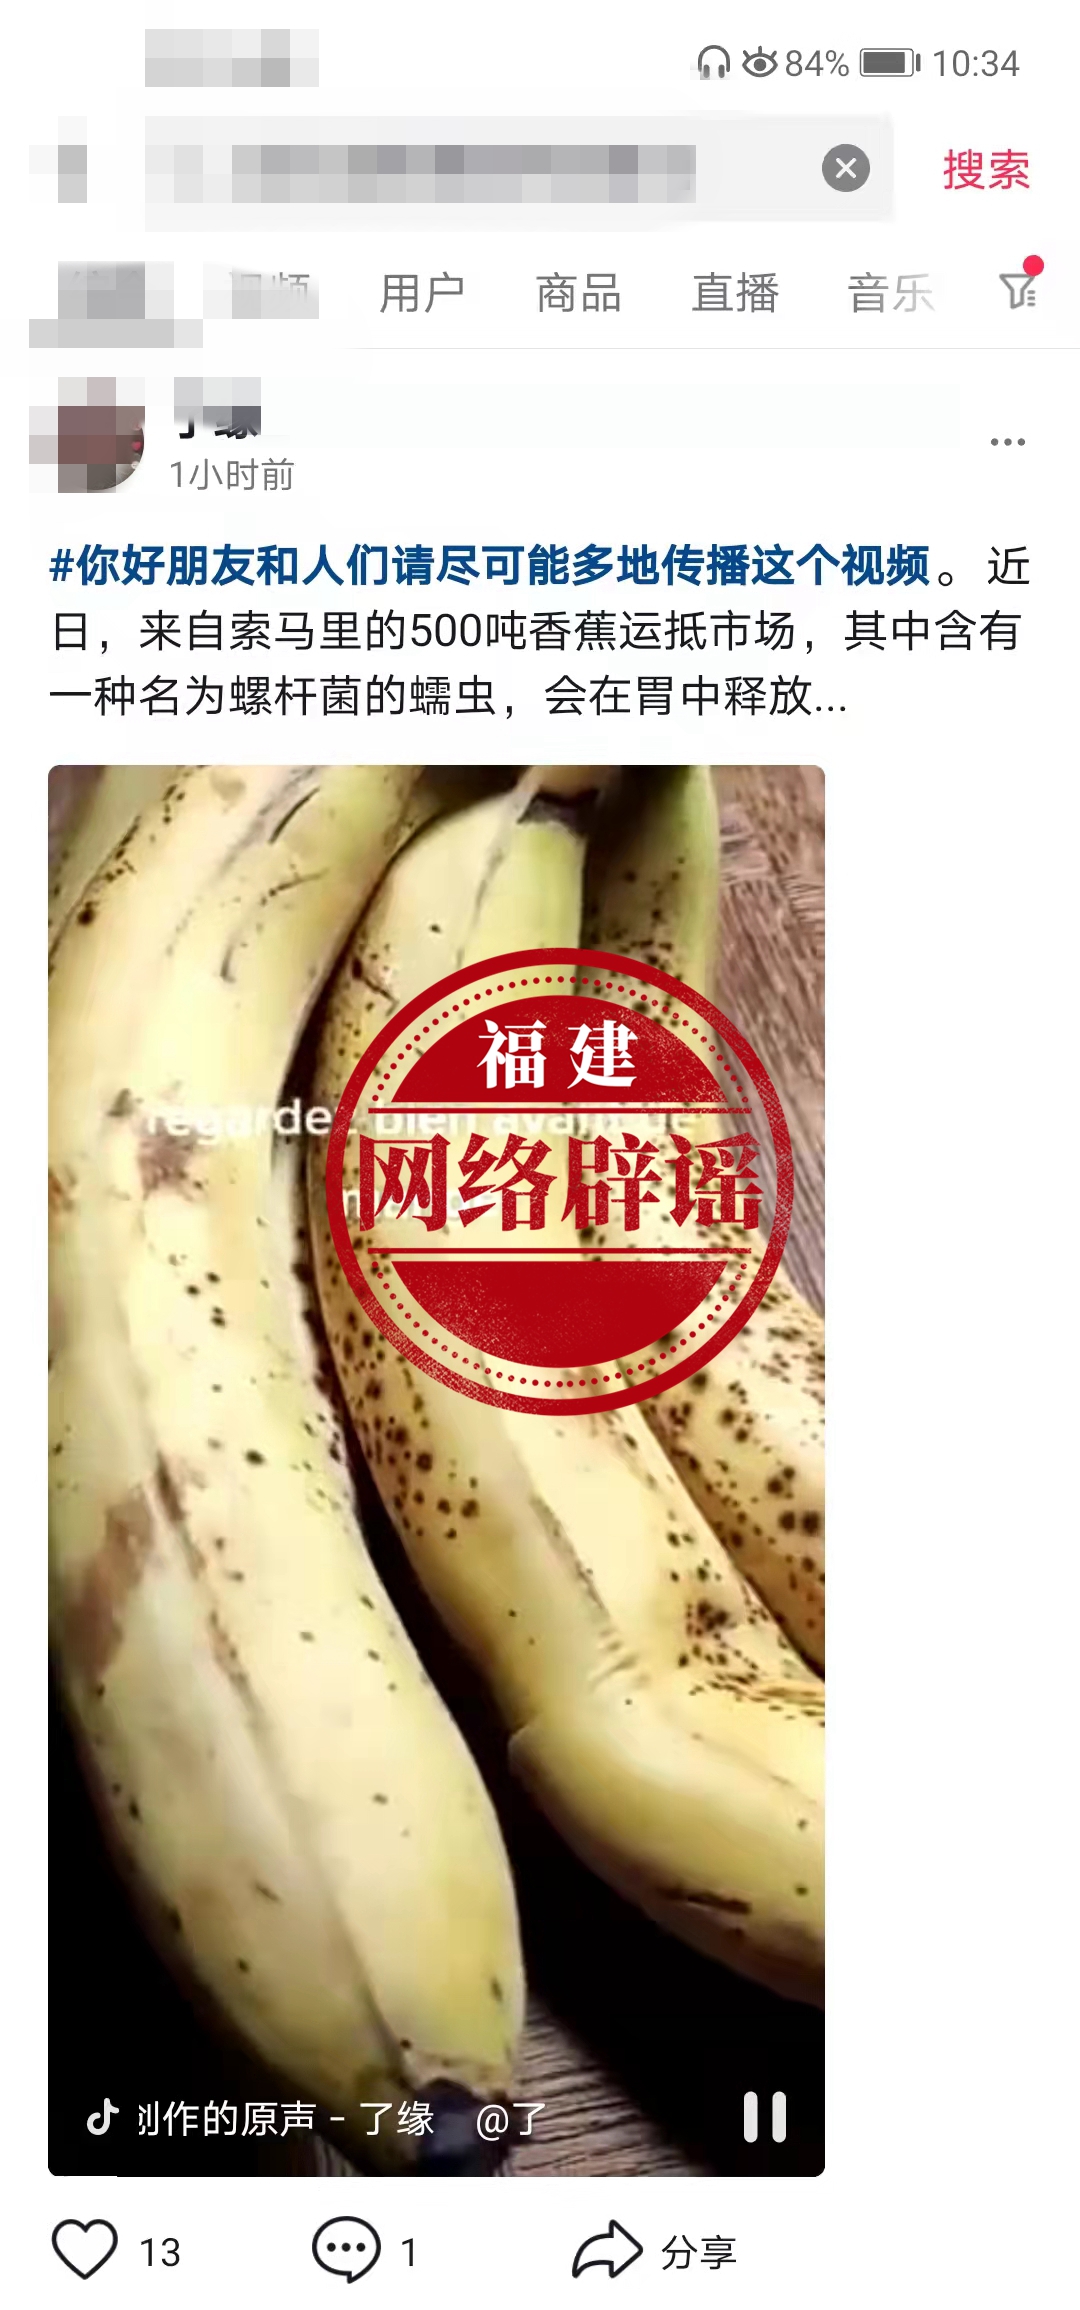 索马里香蕉是毒香蕉，流入中国市场？网传消息不实